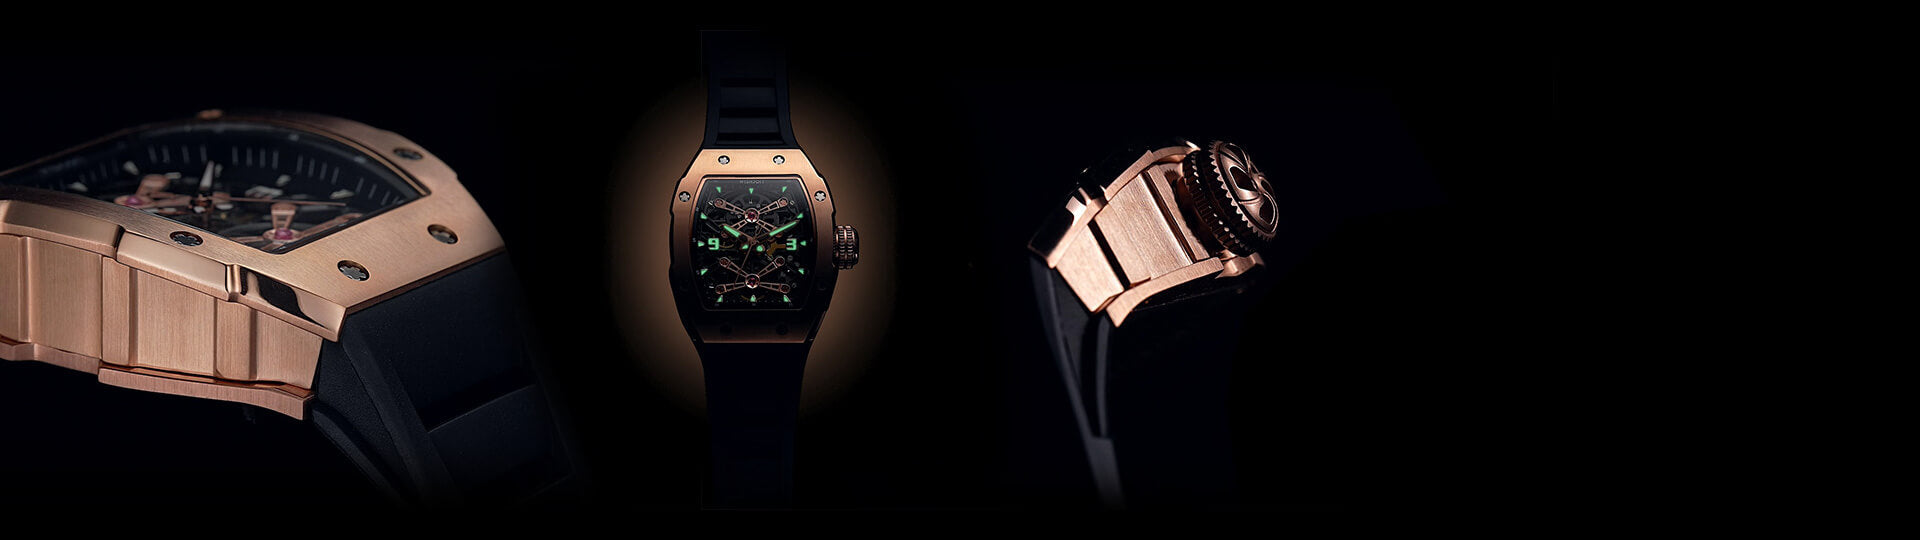 Wrist Watches - Shop Best Wrist Watches for Men | Wishdoit watches